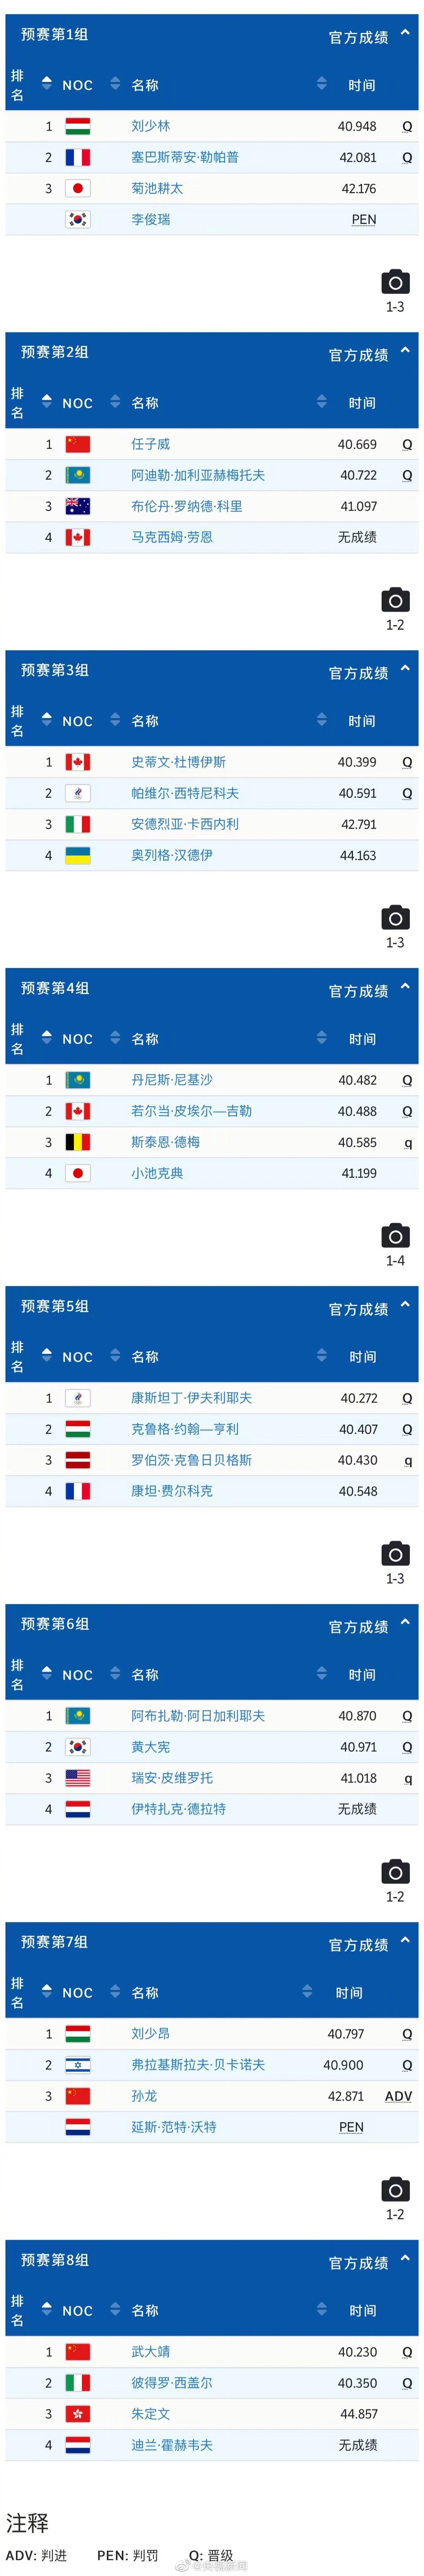 短道速滑男子500米预赛中国3人全部晋级